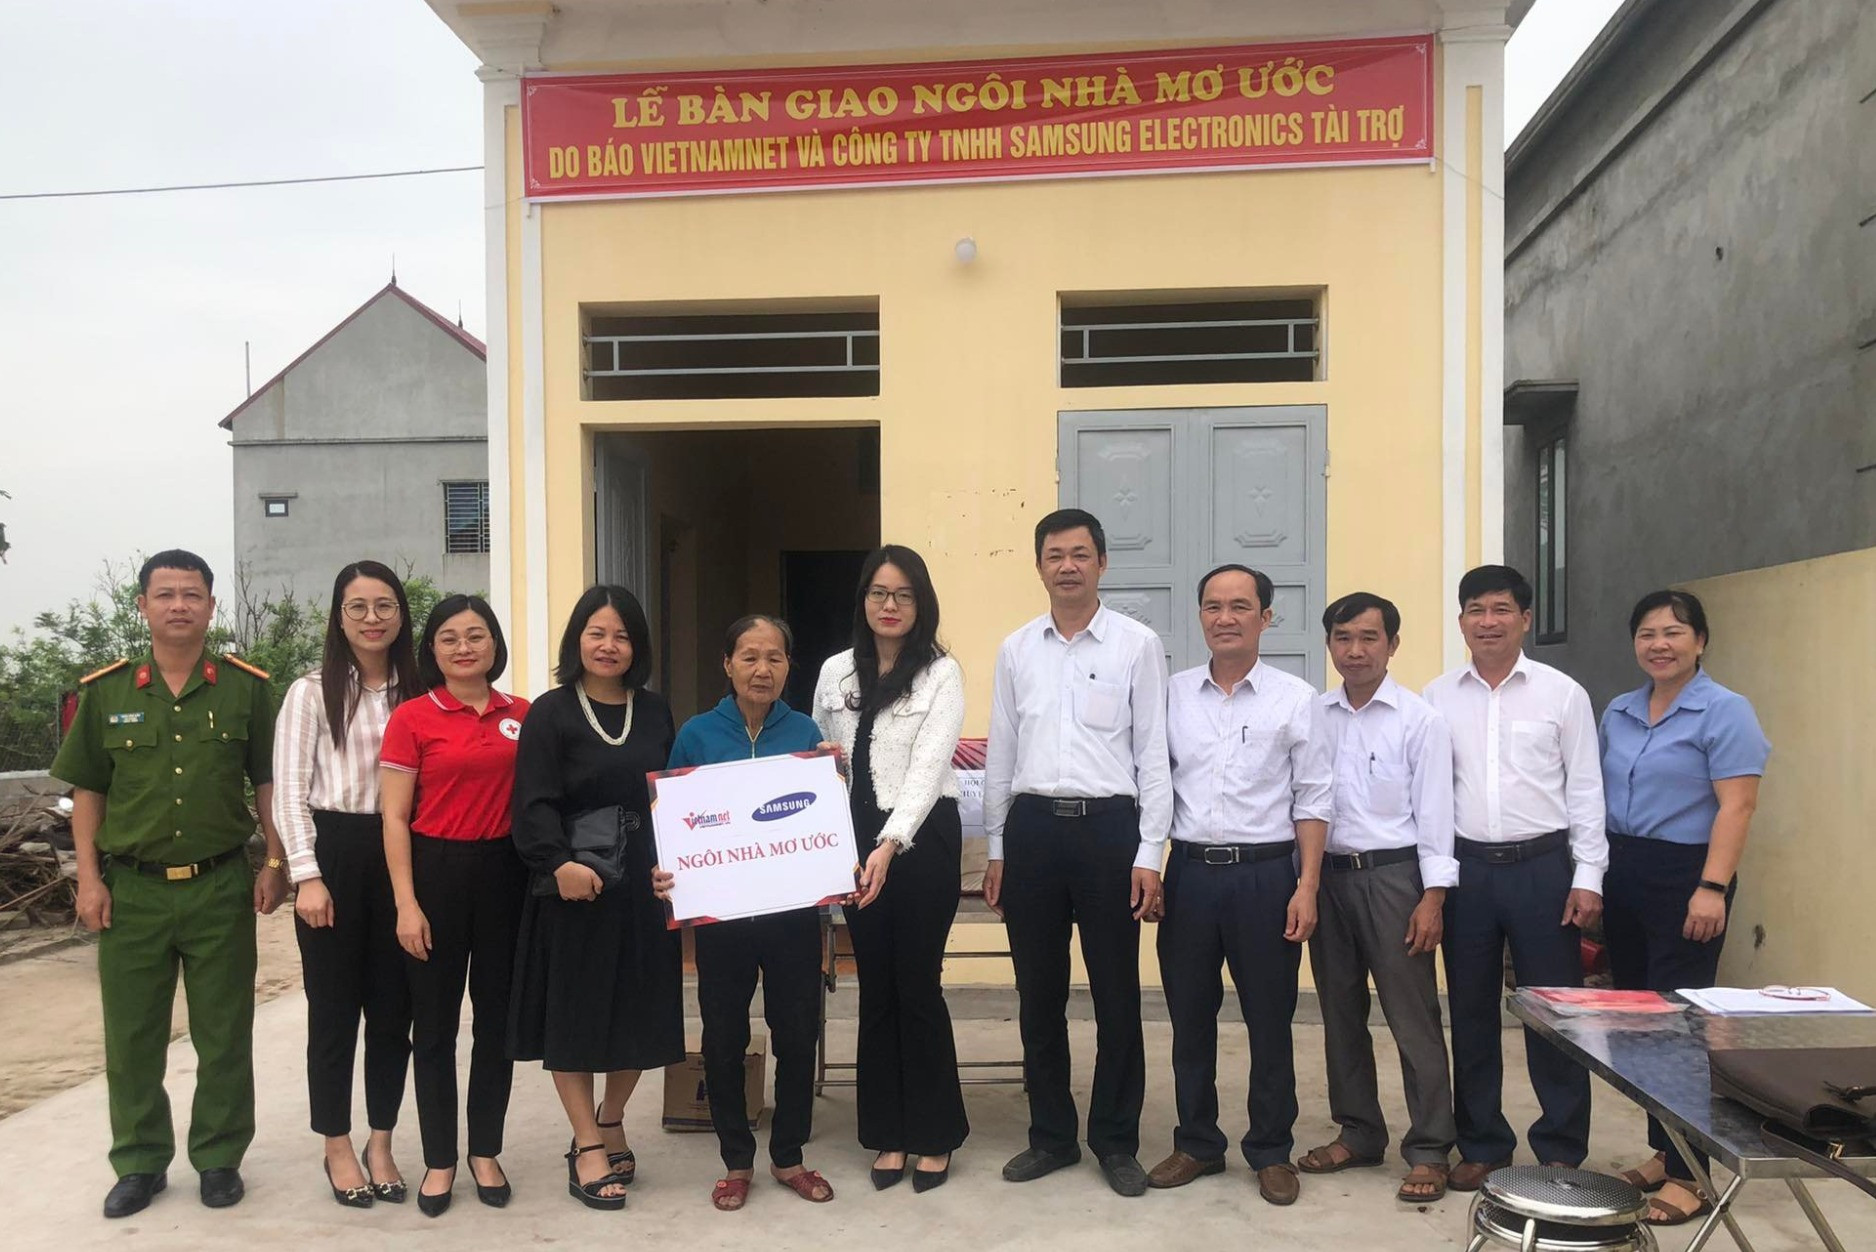 Goá phụ nghèo ở Nam Định xúc động đón nhận Ngôi nhà mơ ước